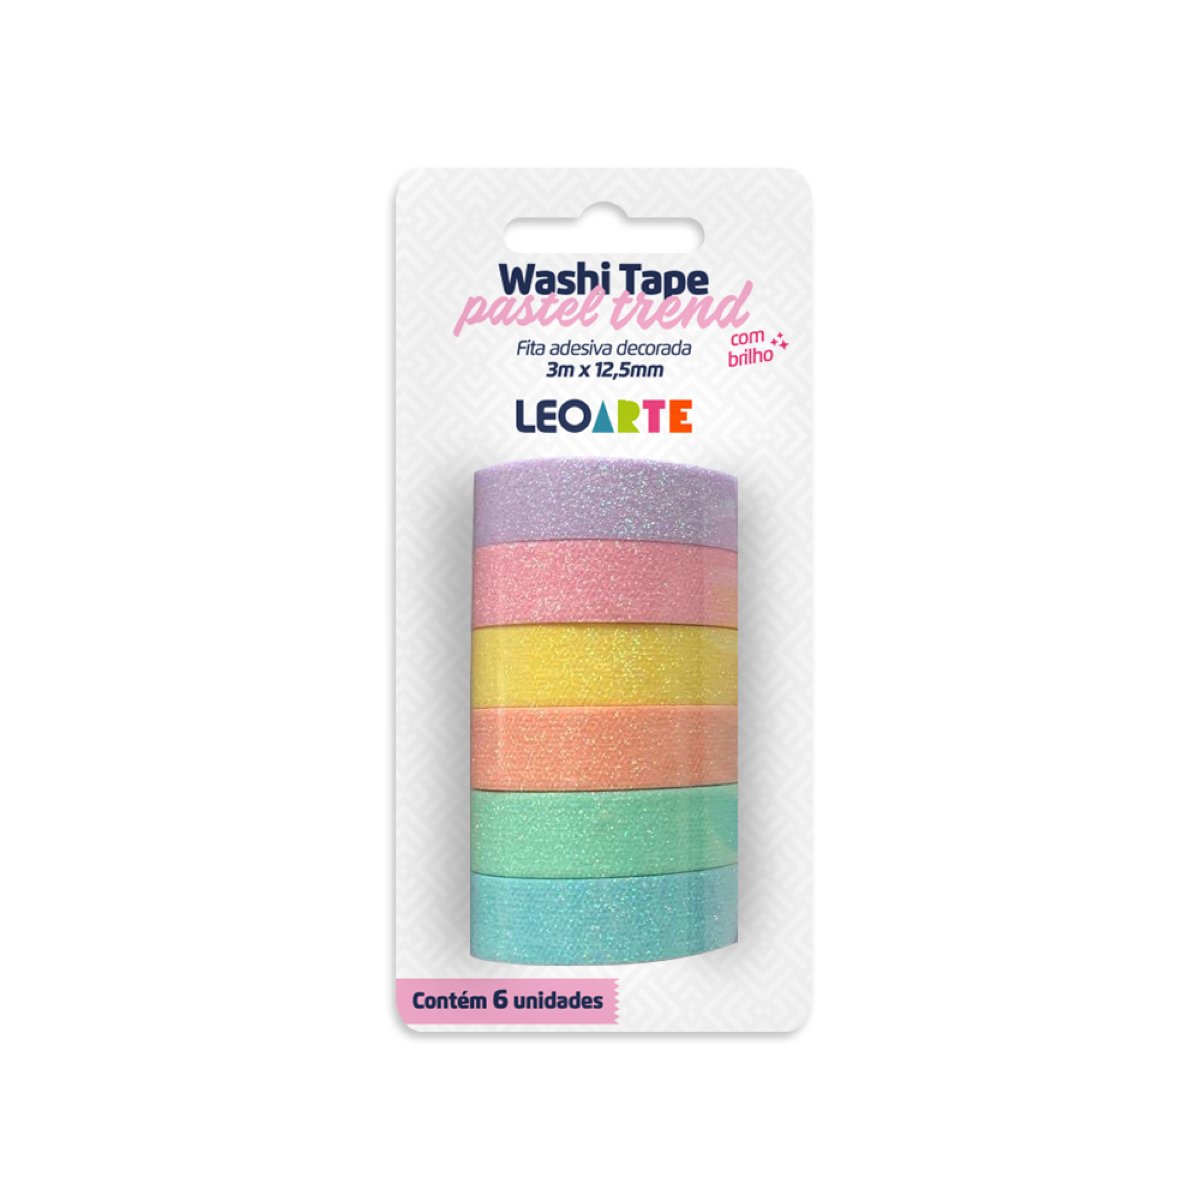 Washi Tape pastel Trend c/06 